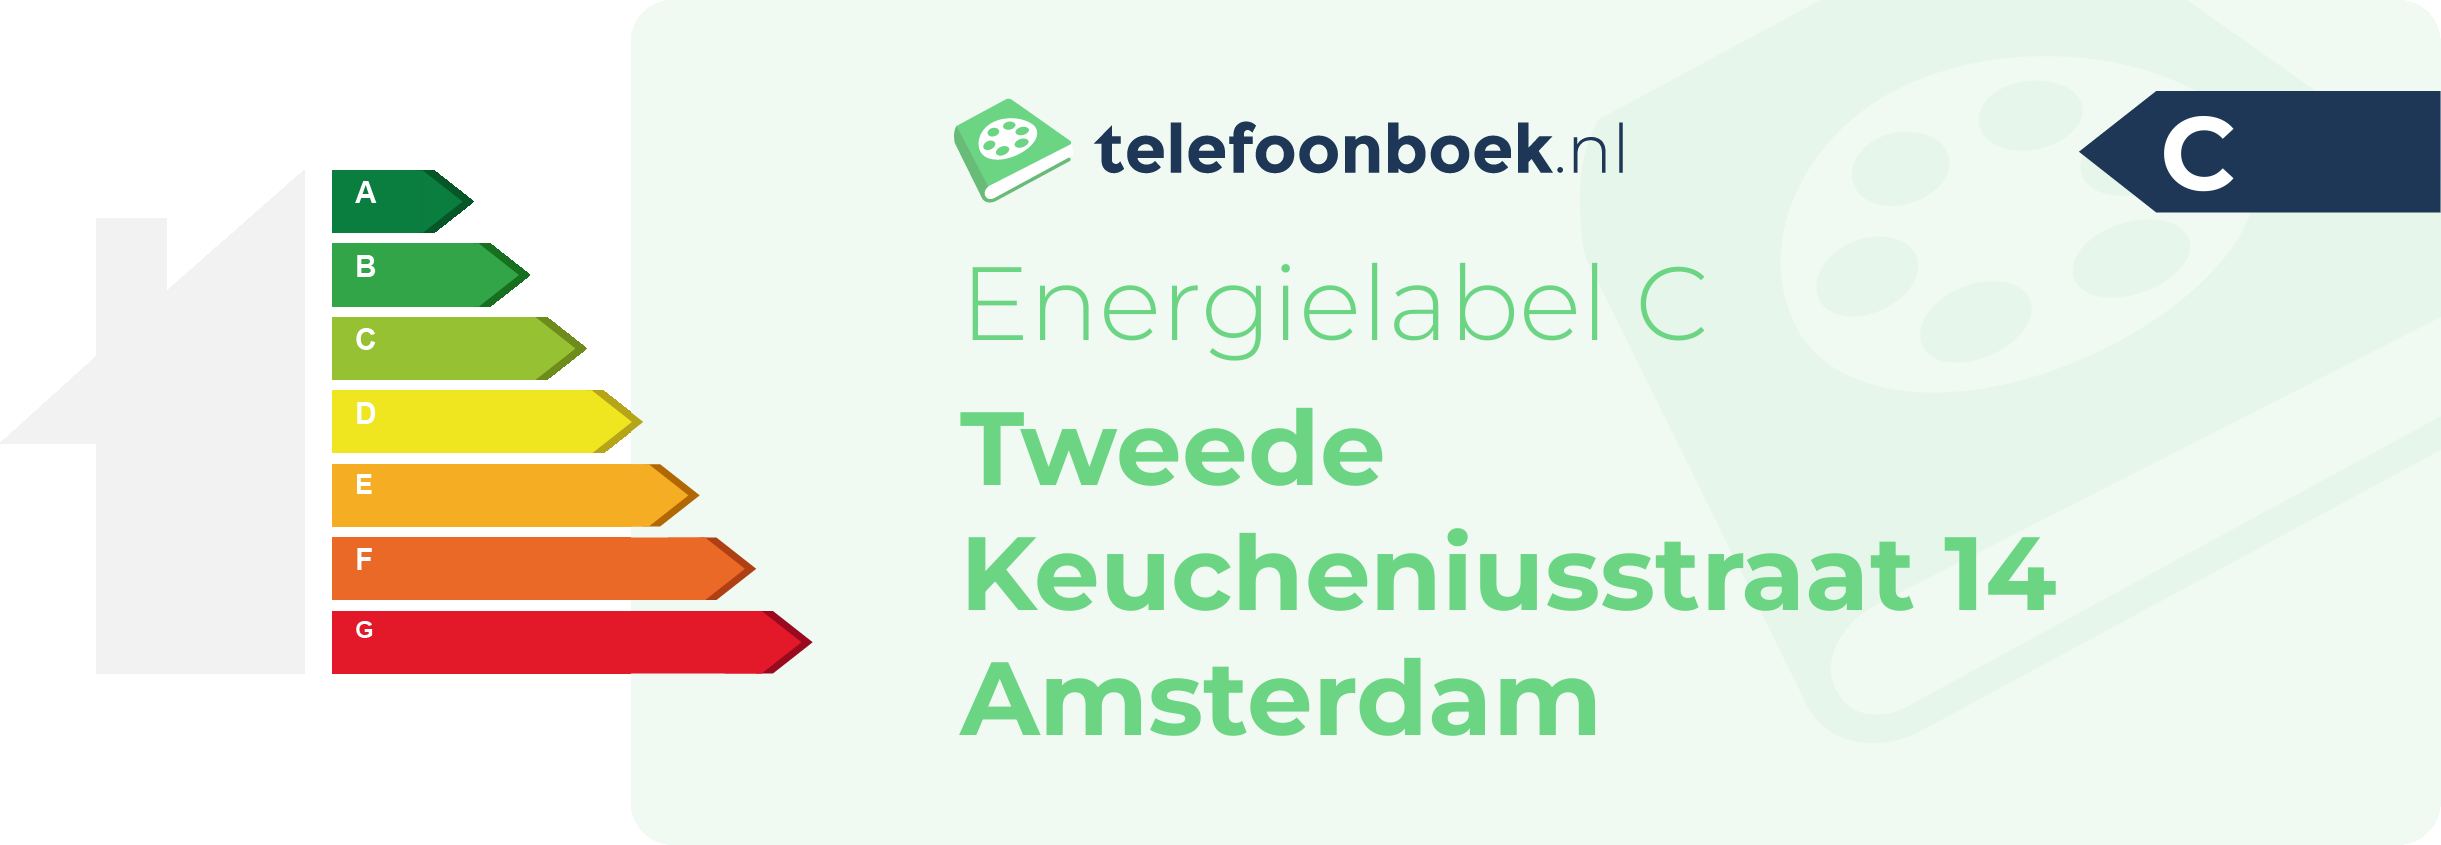 Energielabel Tweede Keucheniusstraat 14 Amsterdam